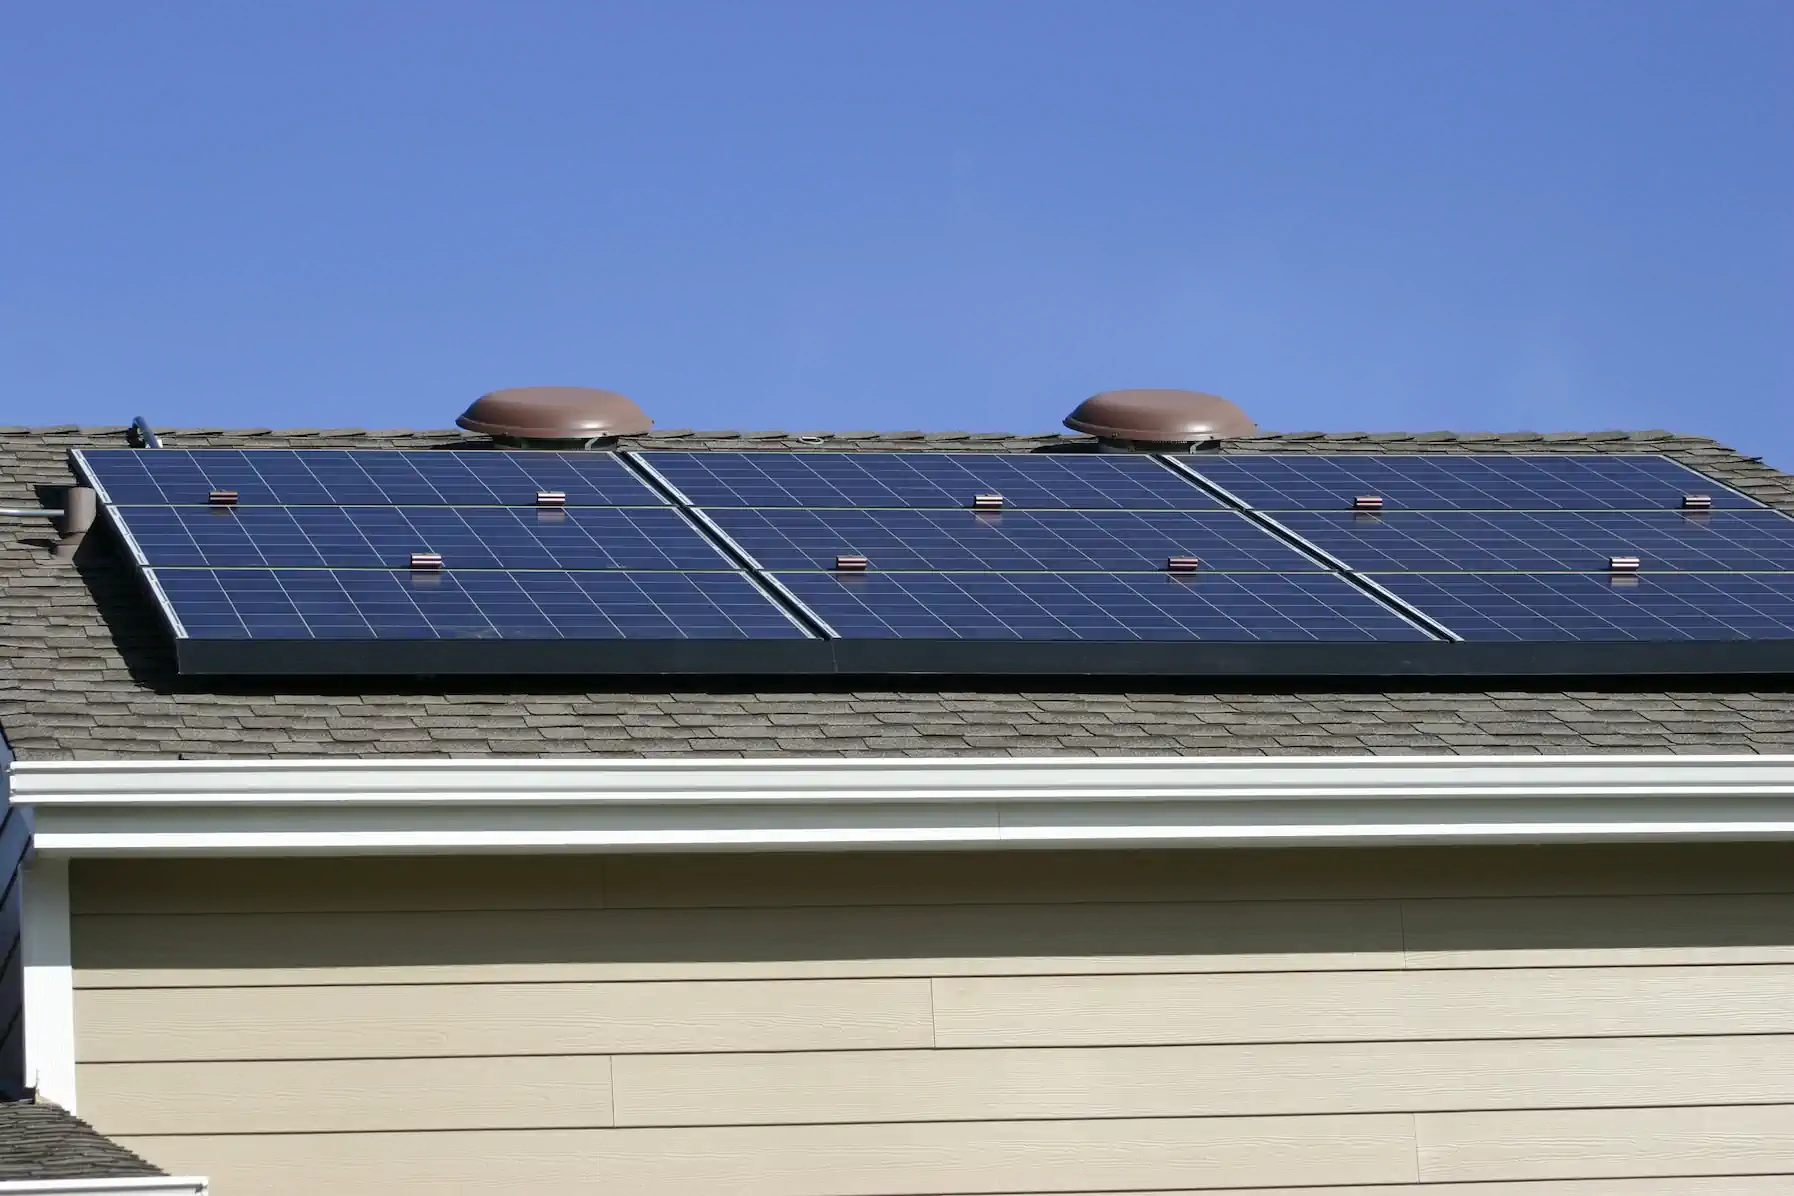 Solar panels on ashpalt roof